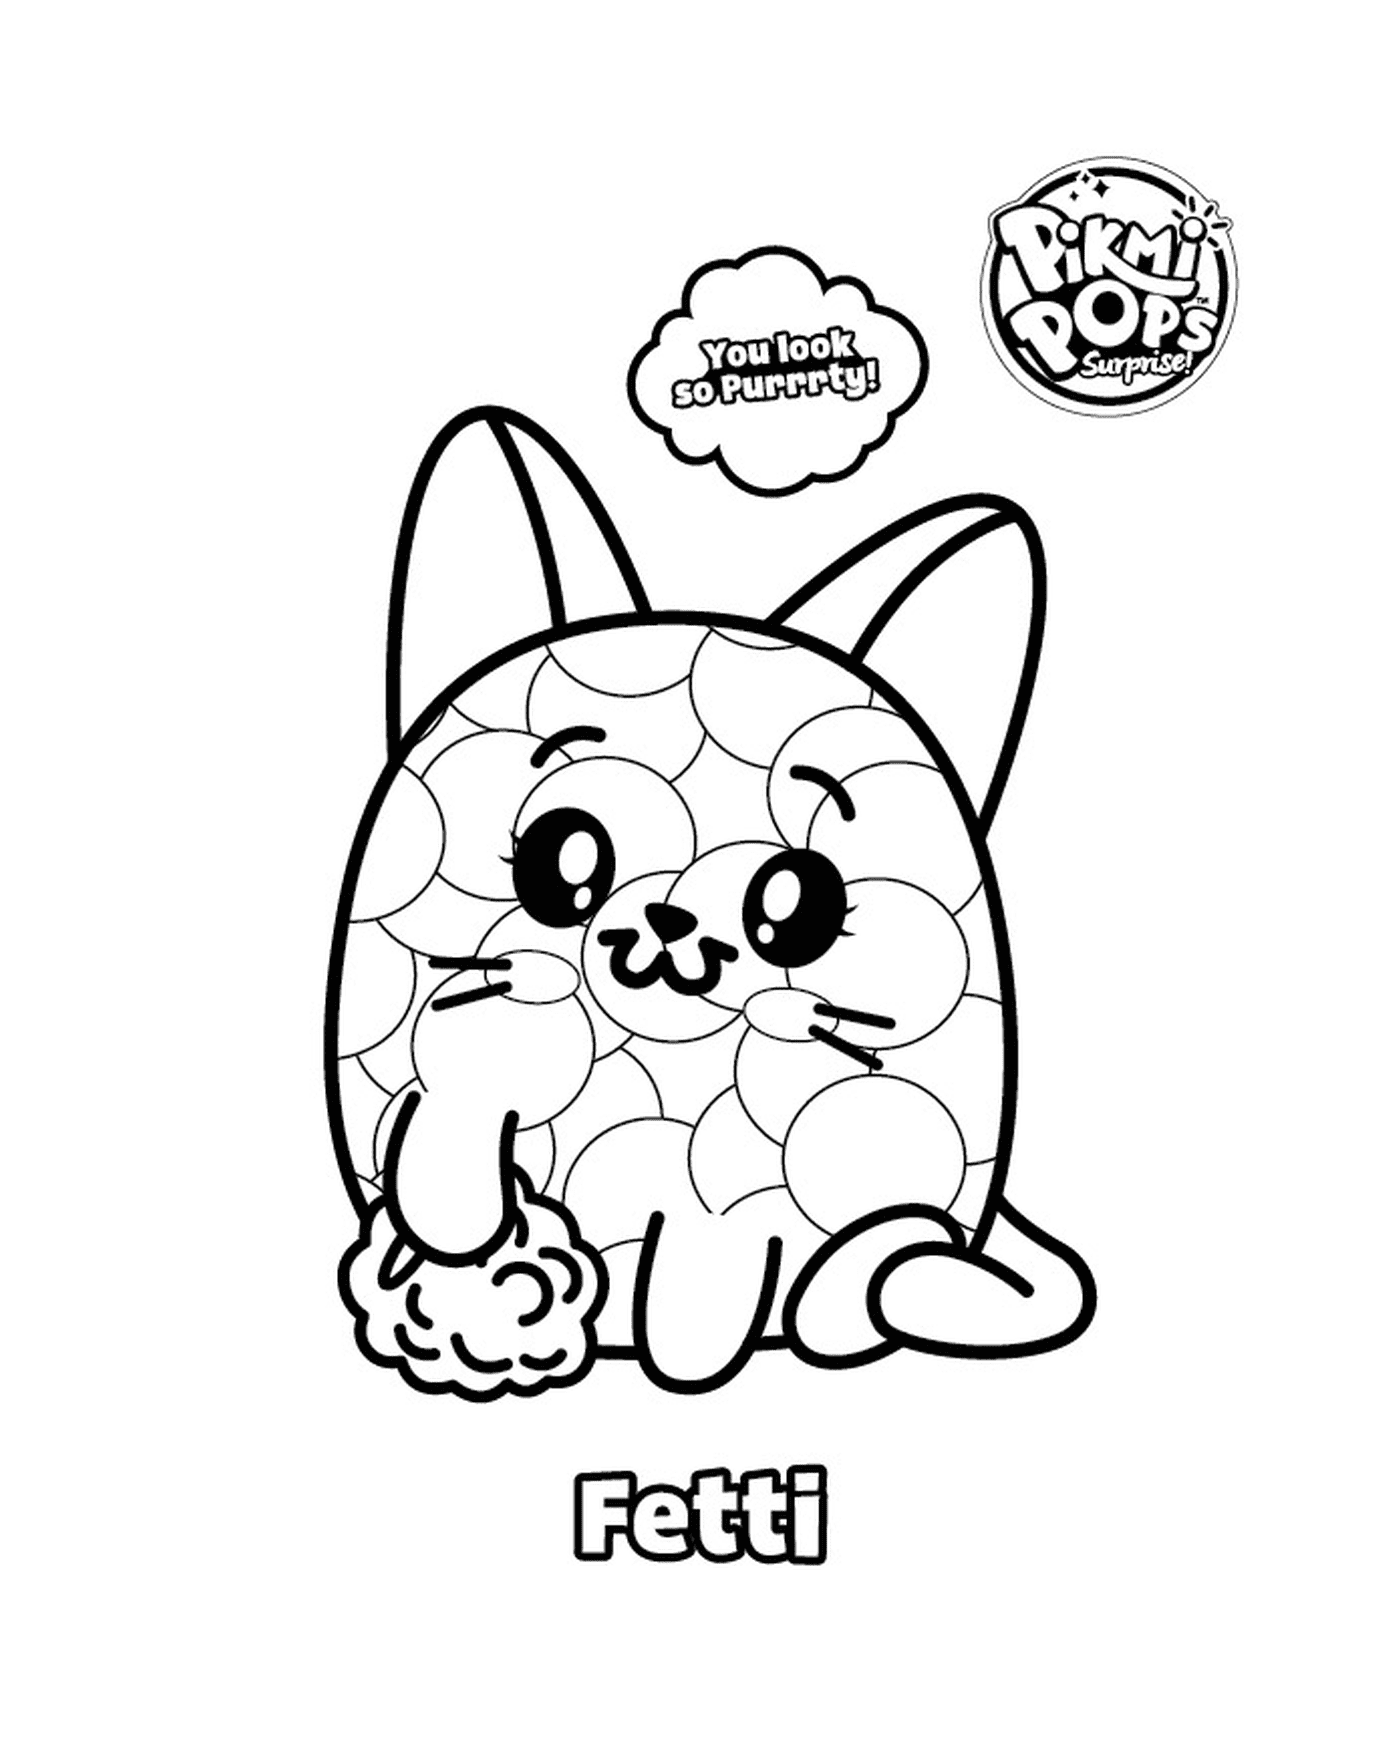  Pikmi Pop con un gatto di nome Fetti 